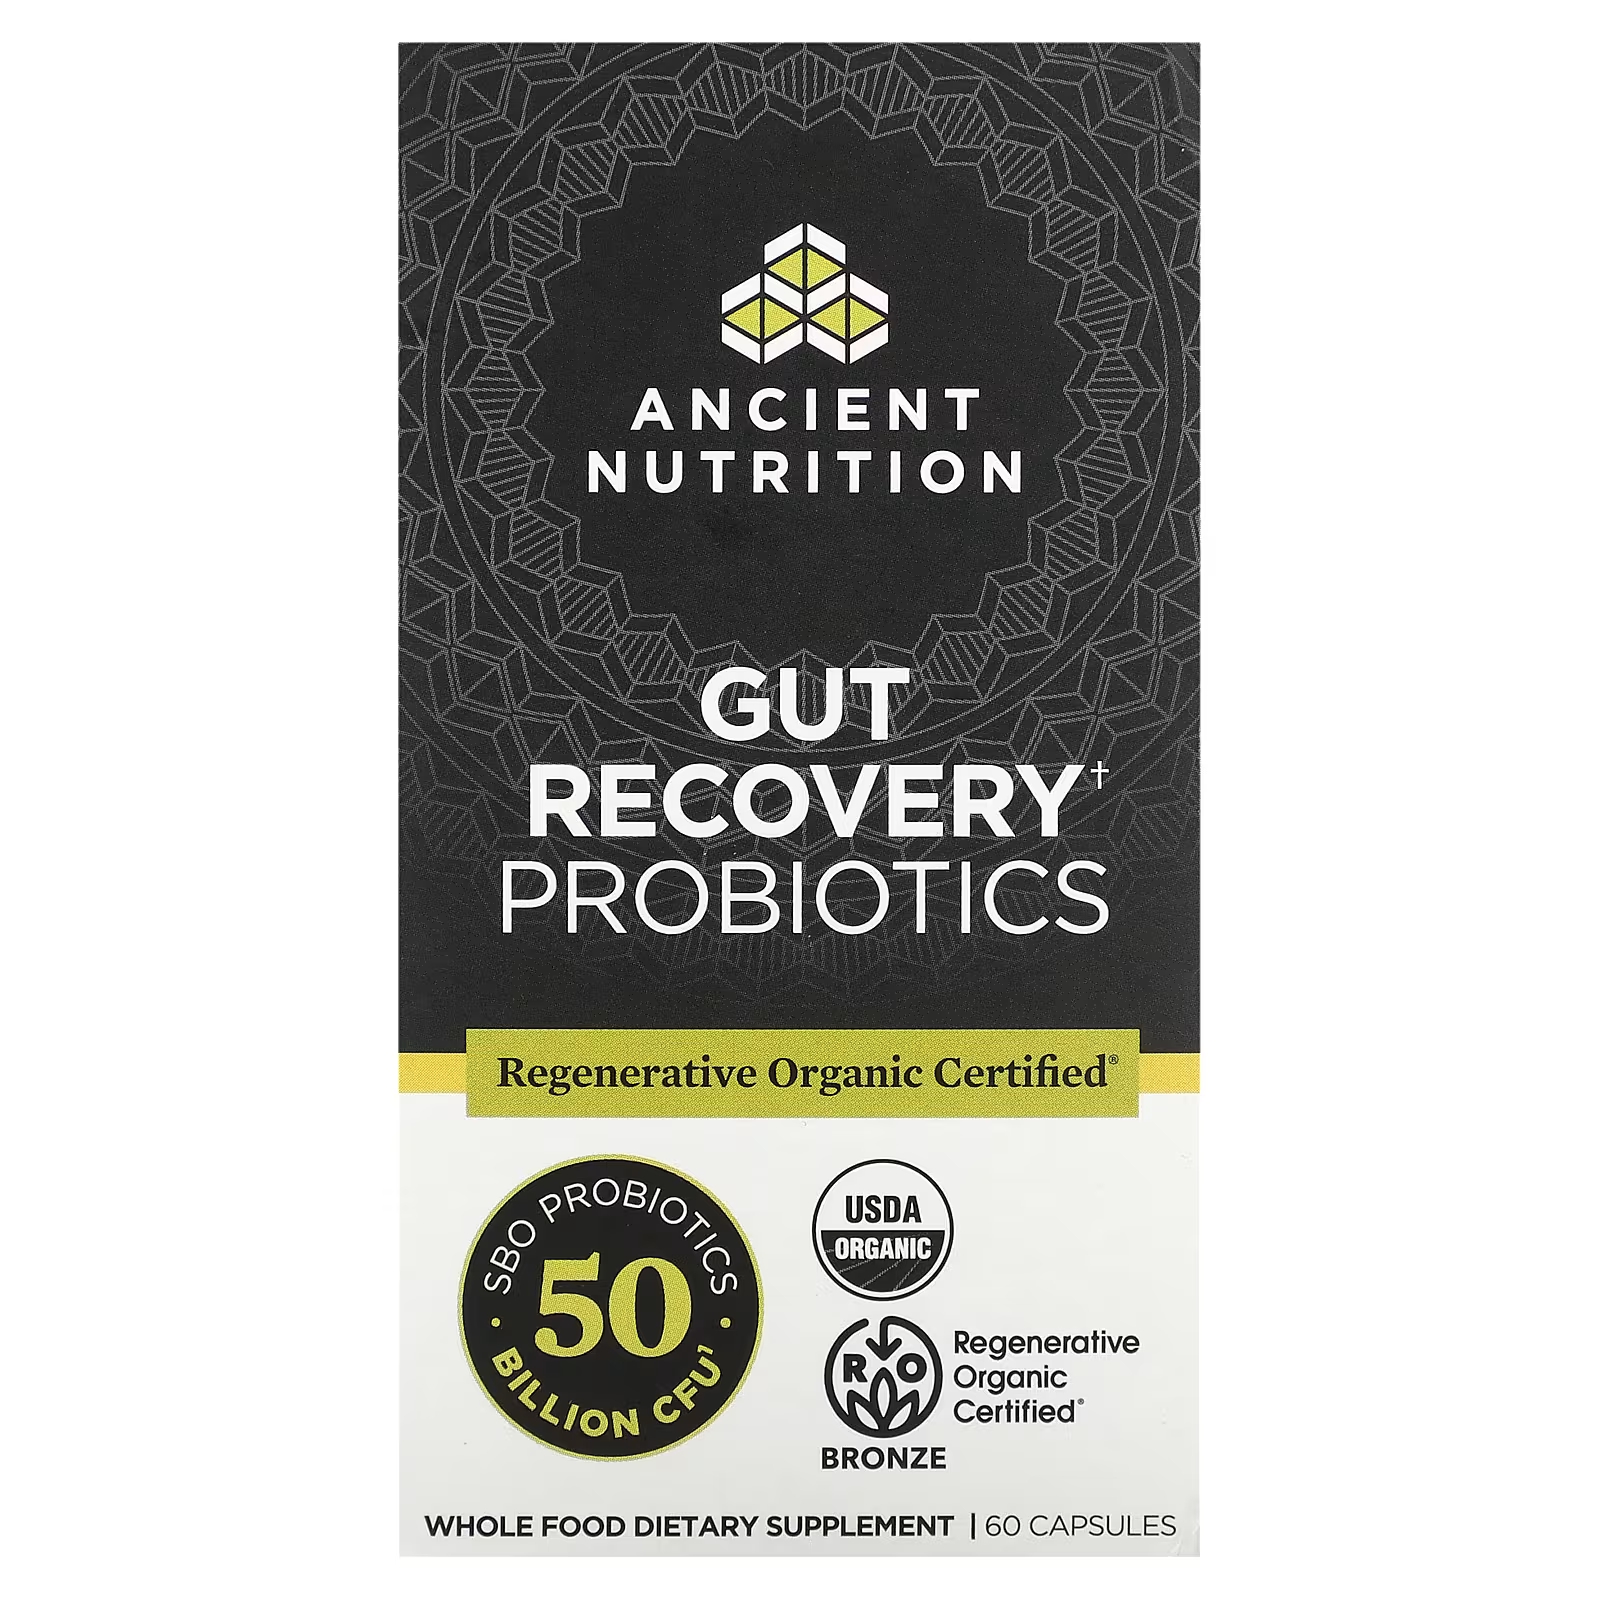 Пробиотики для восстановления кишечника Ancient Nutrition, 60 капсул пробиотики ancient nutrition повышенной силы 60 капсул